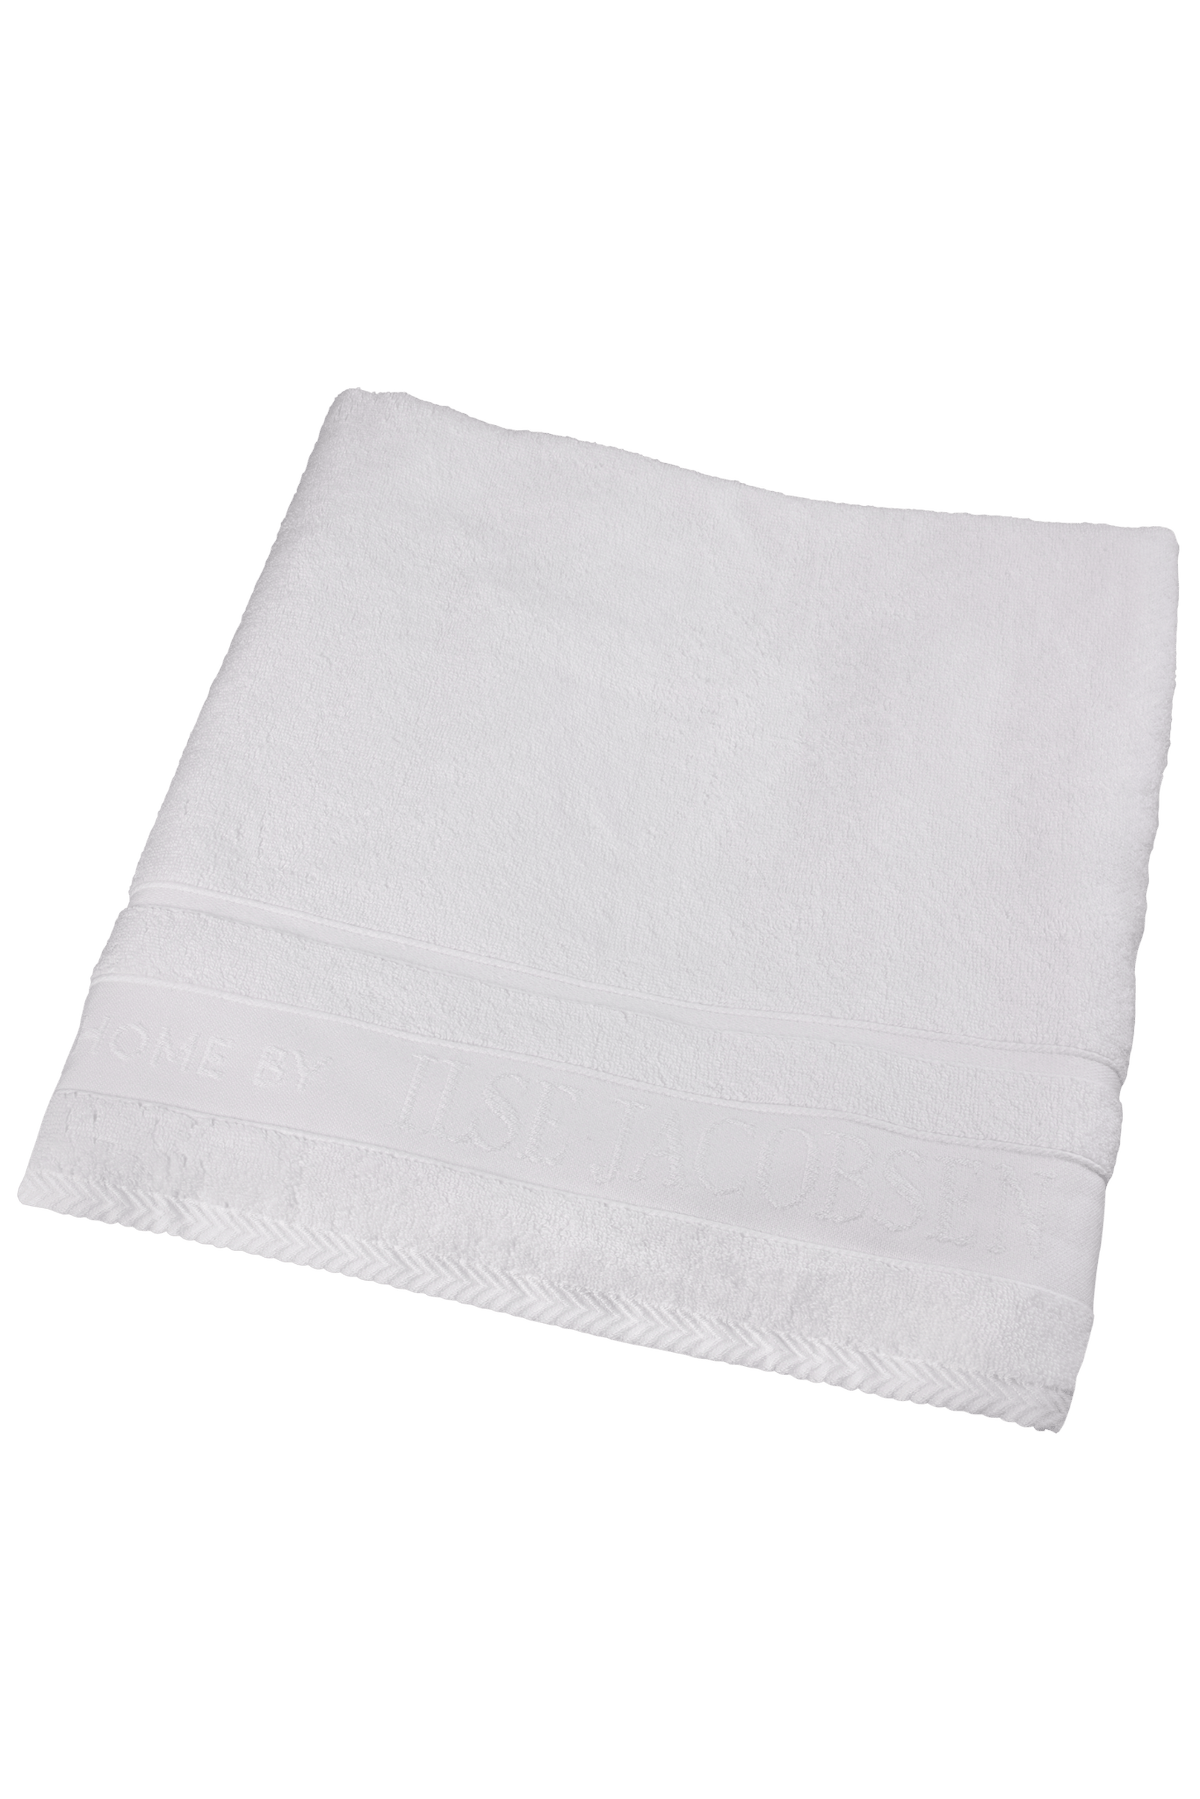 Bath Towel - White Cotton